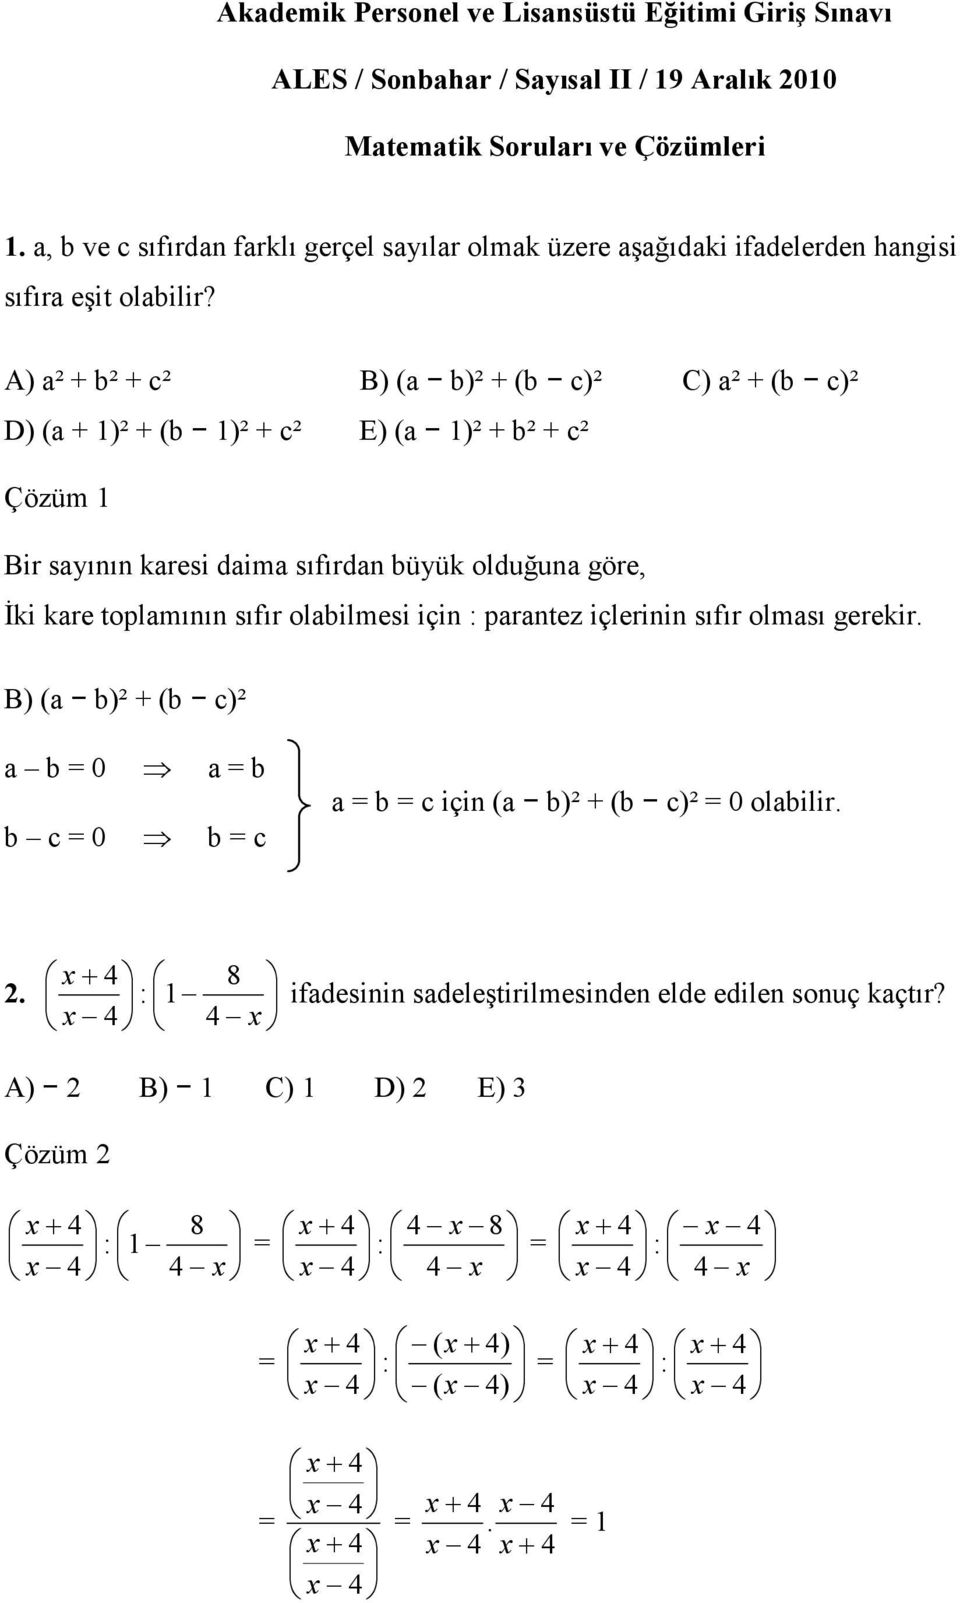 A) a² + b² + c² B) (a b)² + (b c)² C) a² + (b c)² D) (a + 1)² + (b 1)² + c² E) (a 1)² + b² + c² Çözüm 1 Bir sayının karesi daima sıfırdan büyük olduğuna göre, Đki kare